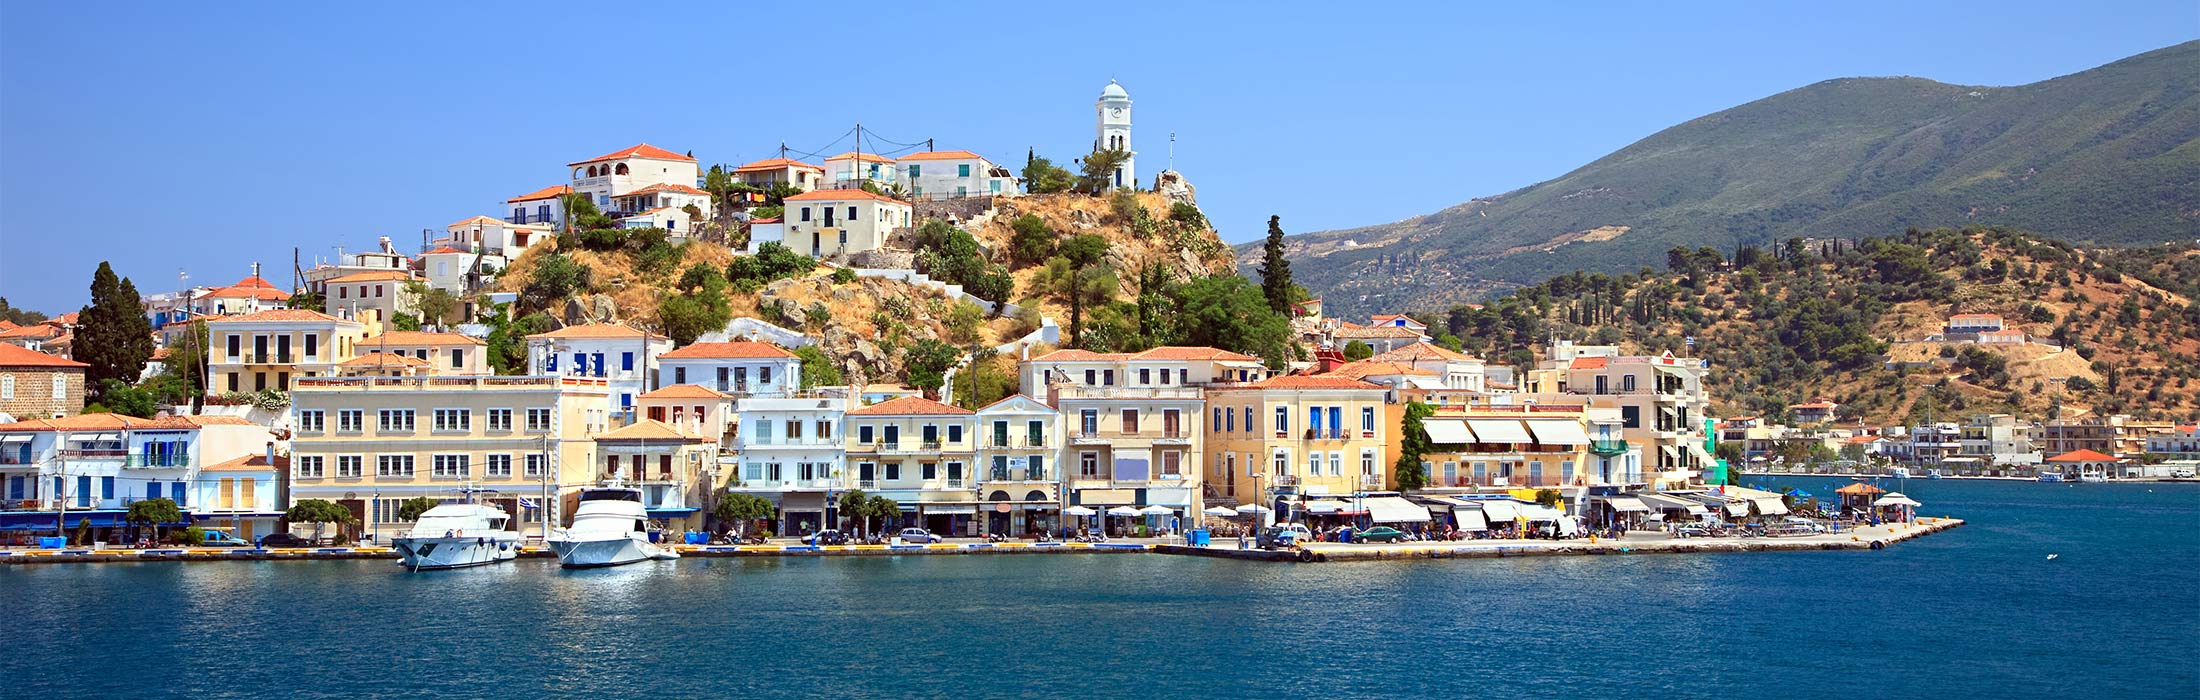 top-yacht-charter-destinations-mediterranean-greece-saronic-gulf-poros-slider-01.jpg